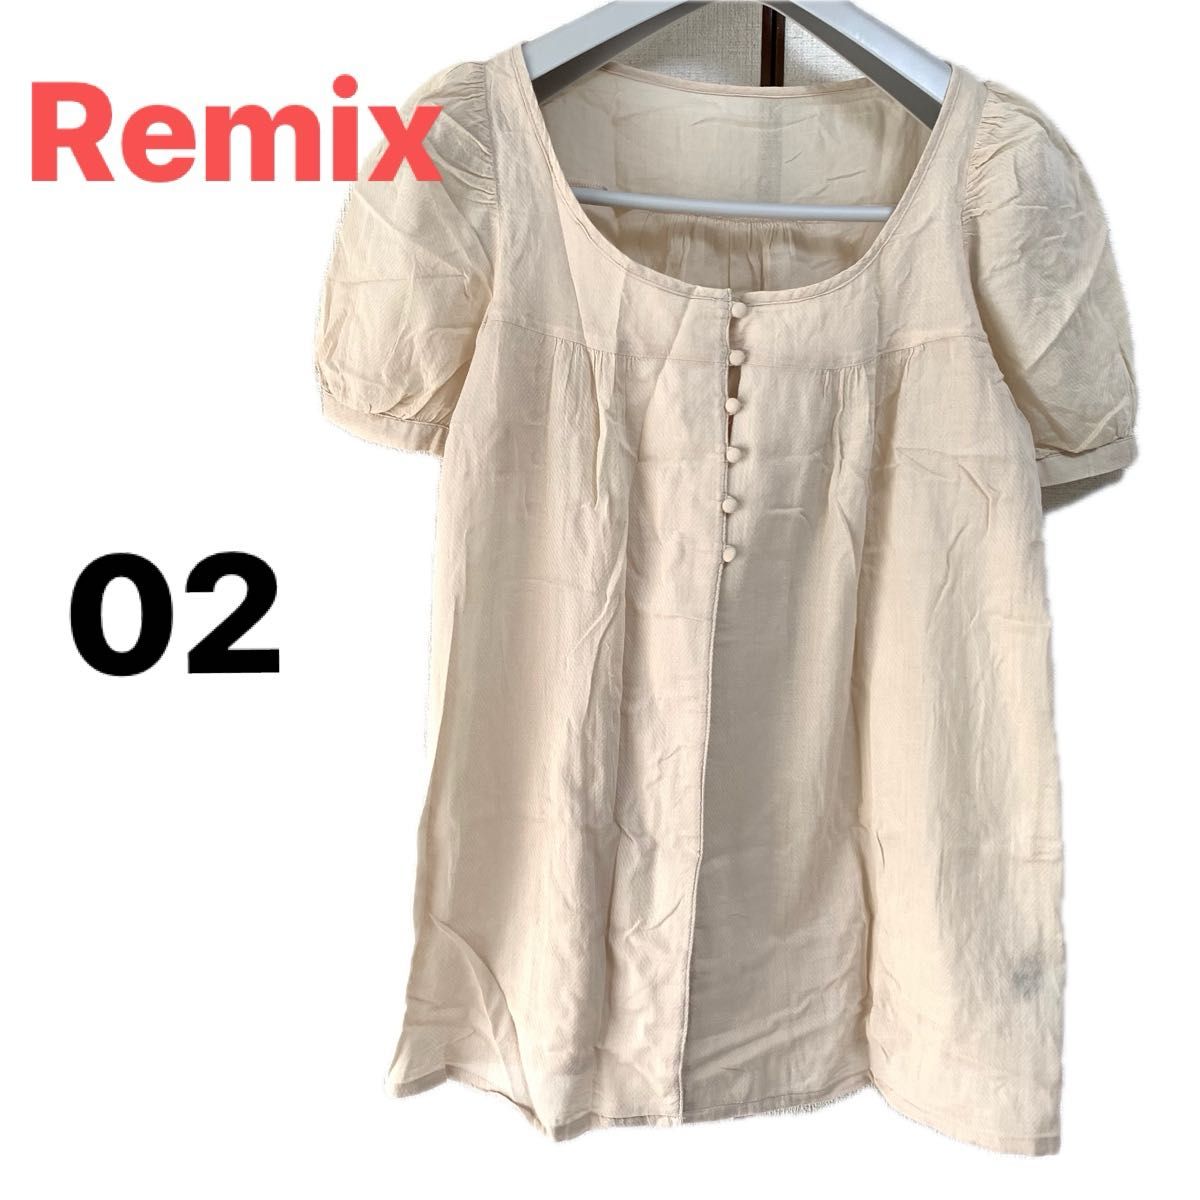 Remix リミックス 半袖 カットソー トップス ブラウス シャツ サイズ02 カーディガン ベージュ 上着 綿 レディース